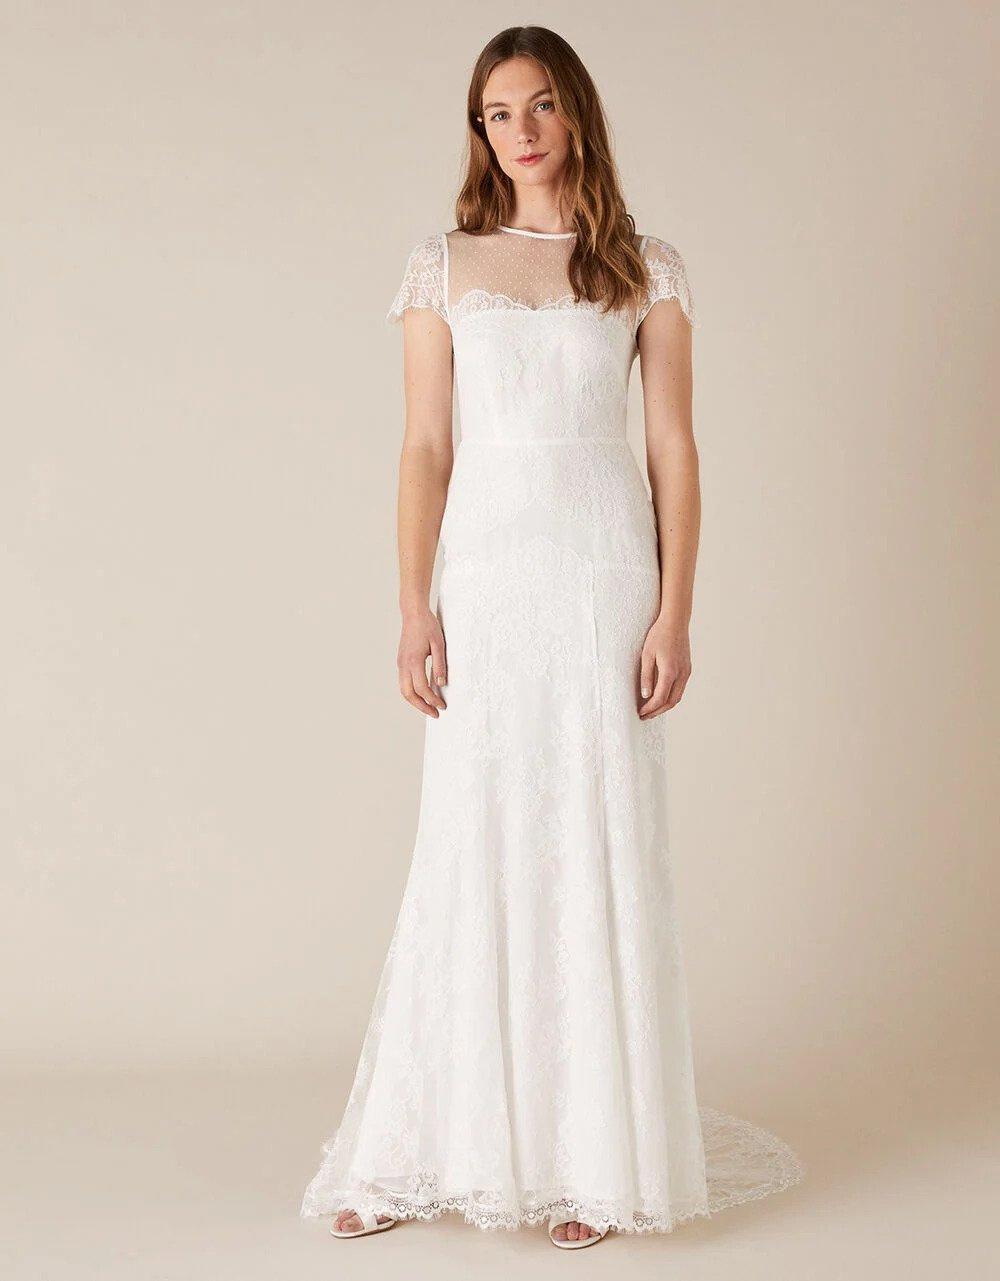 Lace wedding dress for older brides